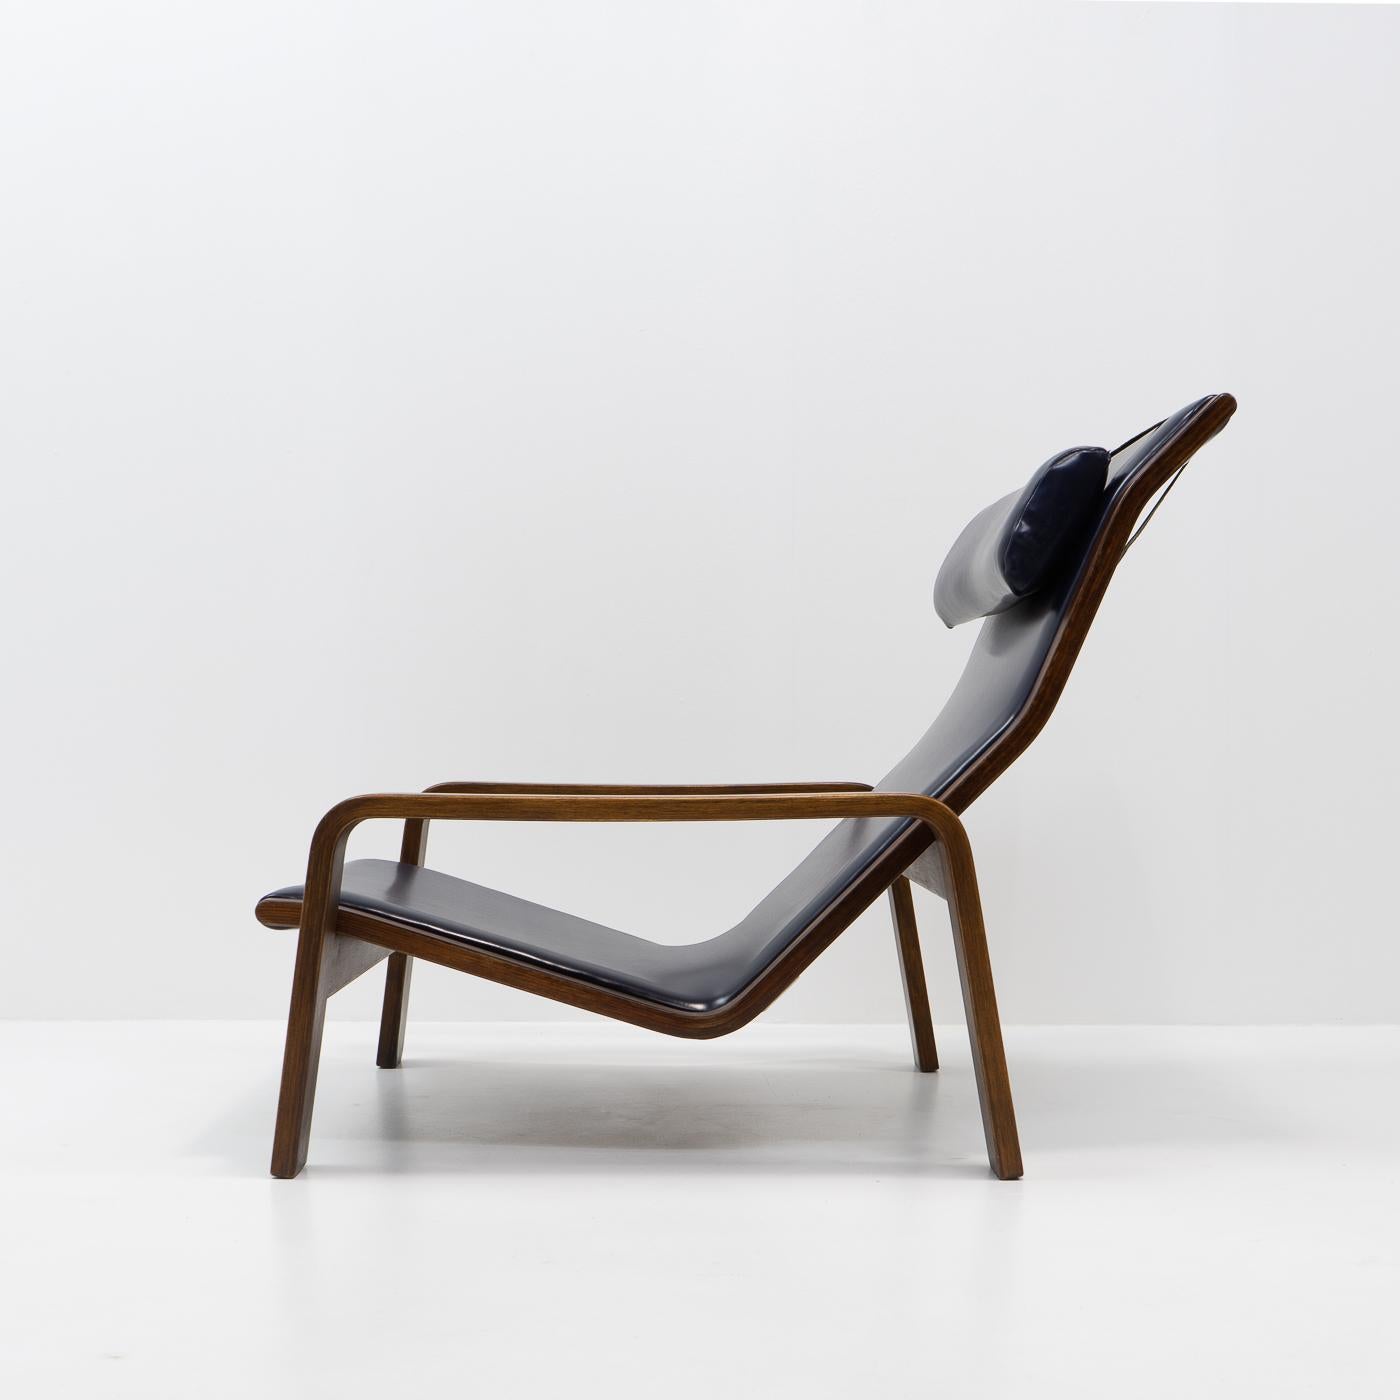 finnish chair designer